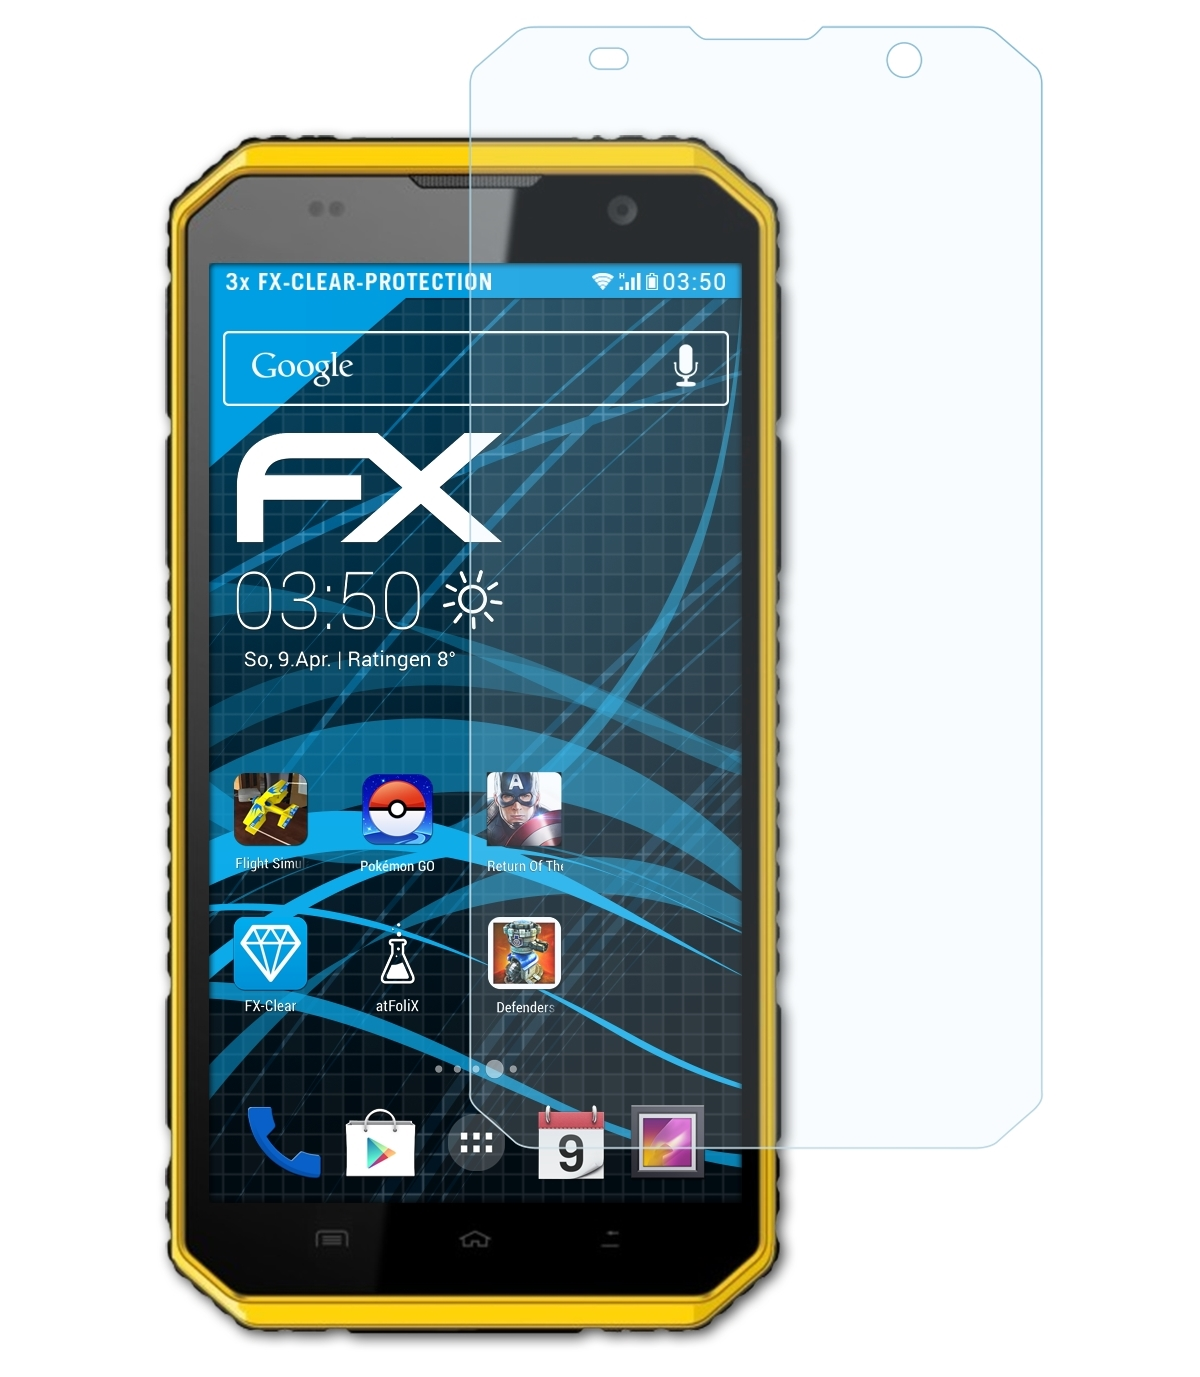 ATFOLIX W9) Displayschutz(für FX-Clear Kenxinda 3x